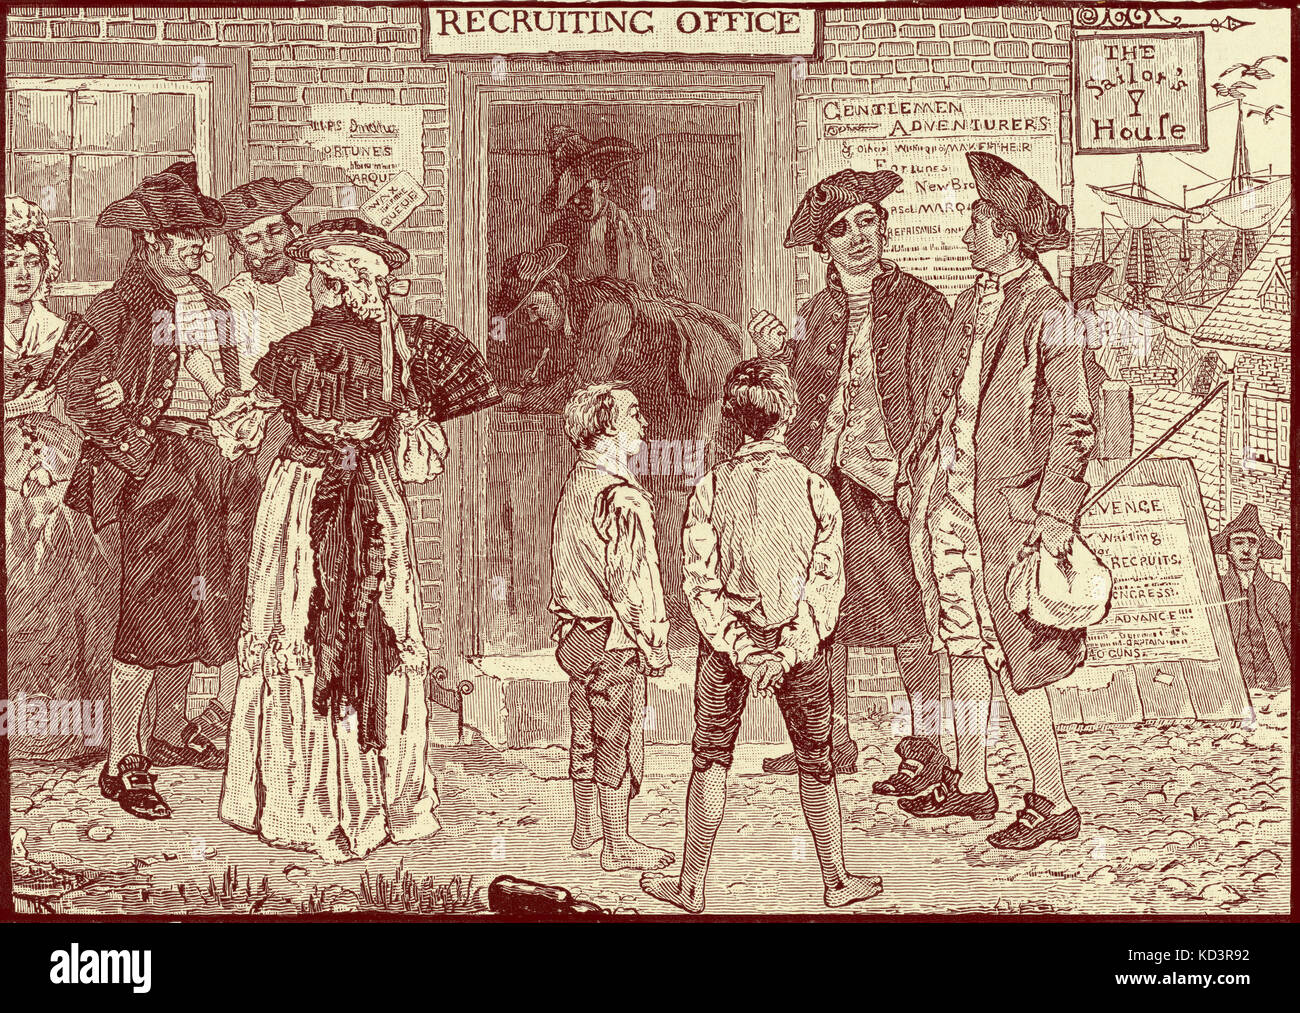 Oficina de recusación revolucionaria para los corsarios estadounidenses, Nueva Londres, Connecticut. Revolución Americana, 1765 - 1783. Ilustración de Howard Pyle, 1896 Foto de stock